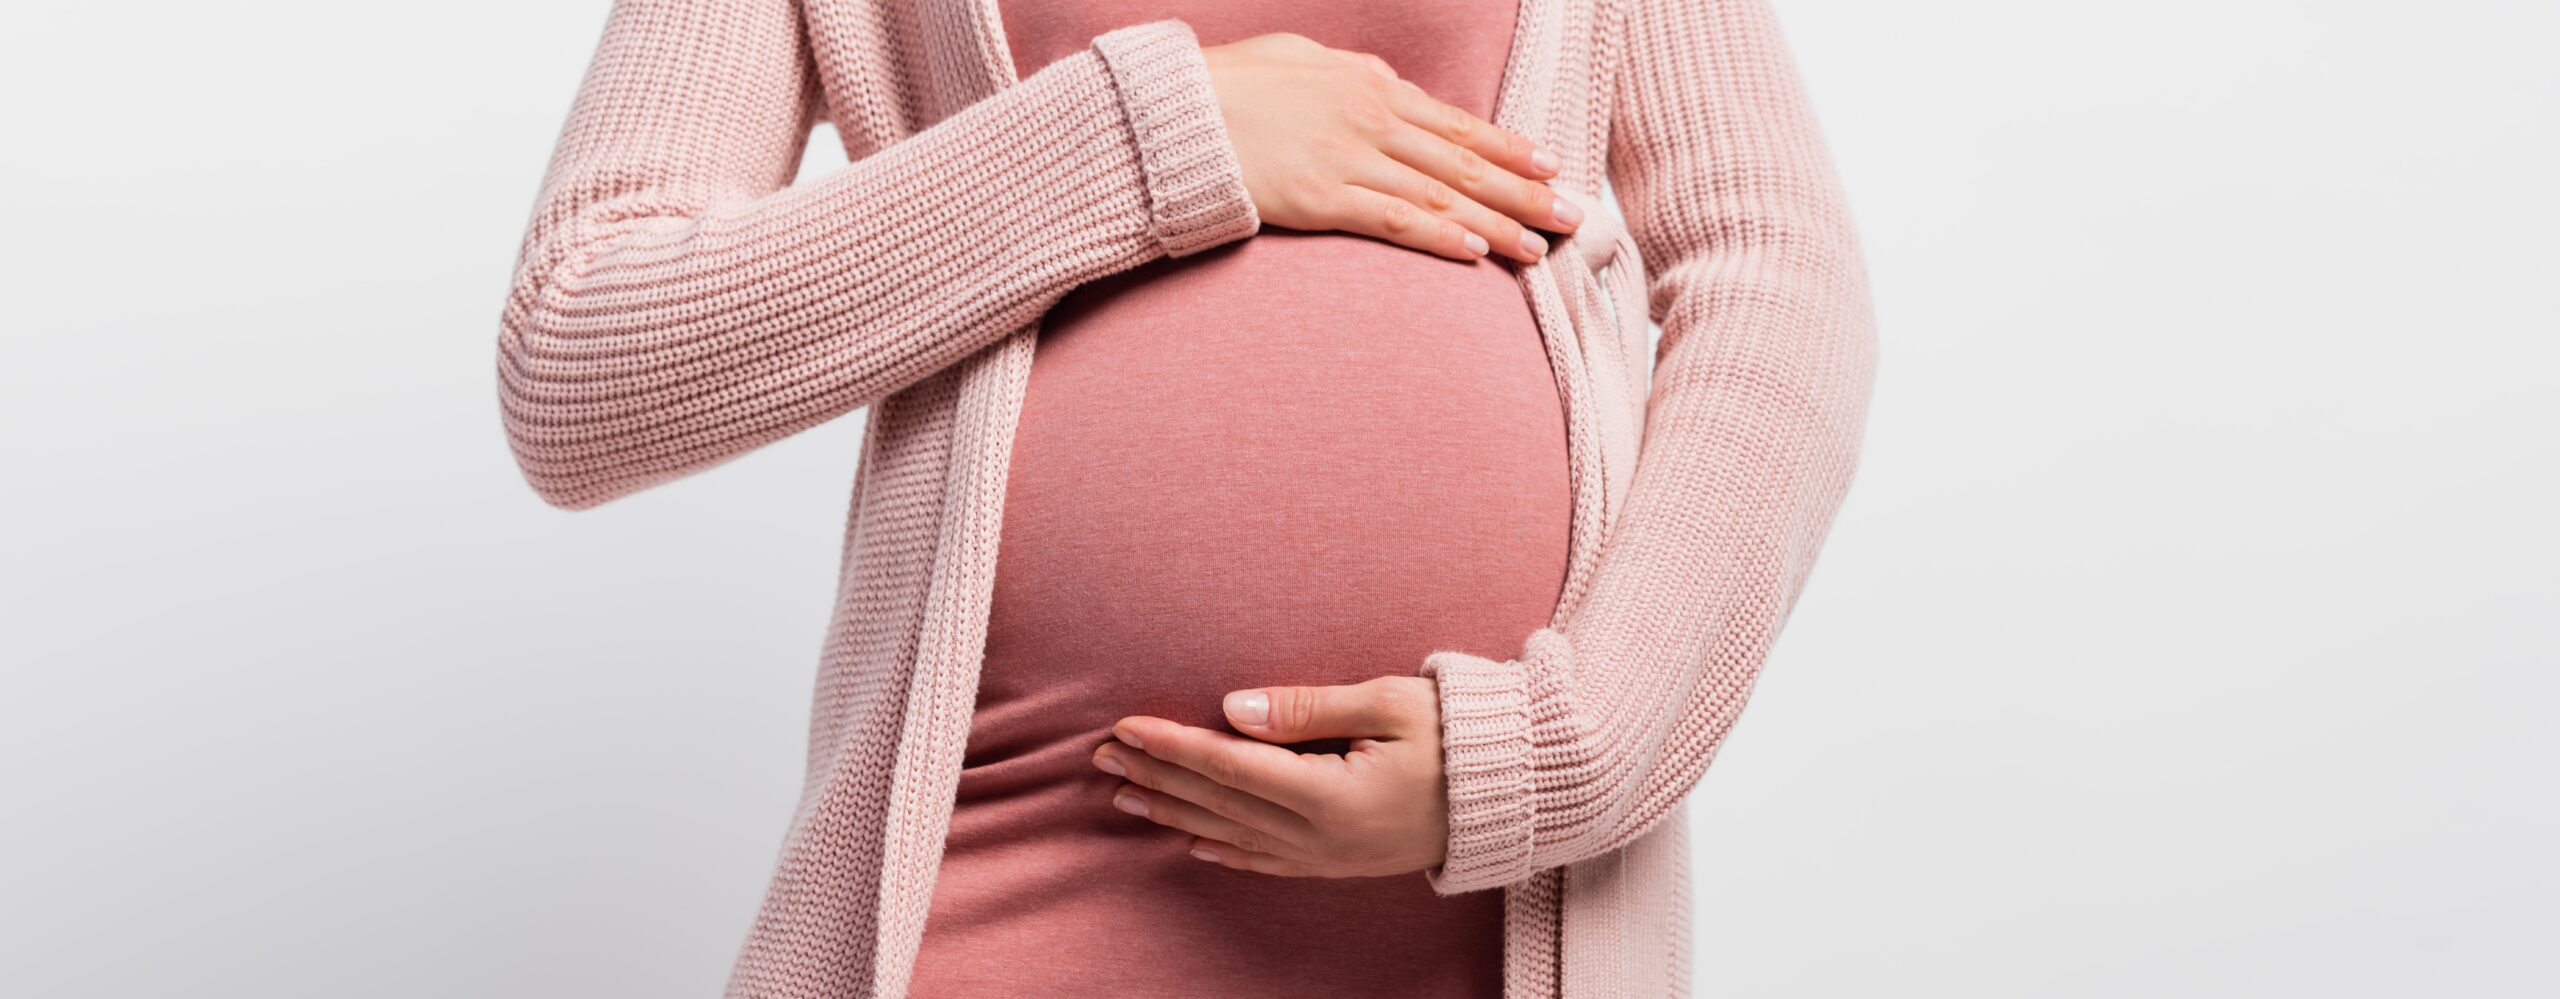 Cuidados na gravidez: confira 10 dicas